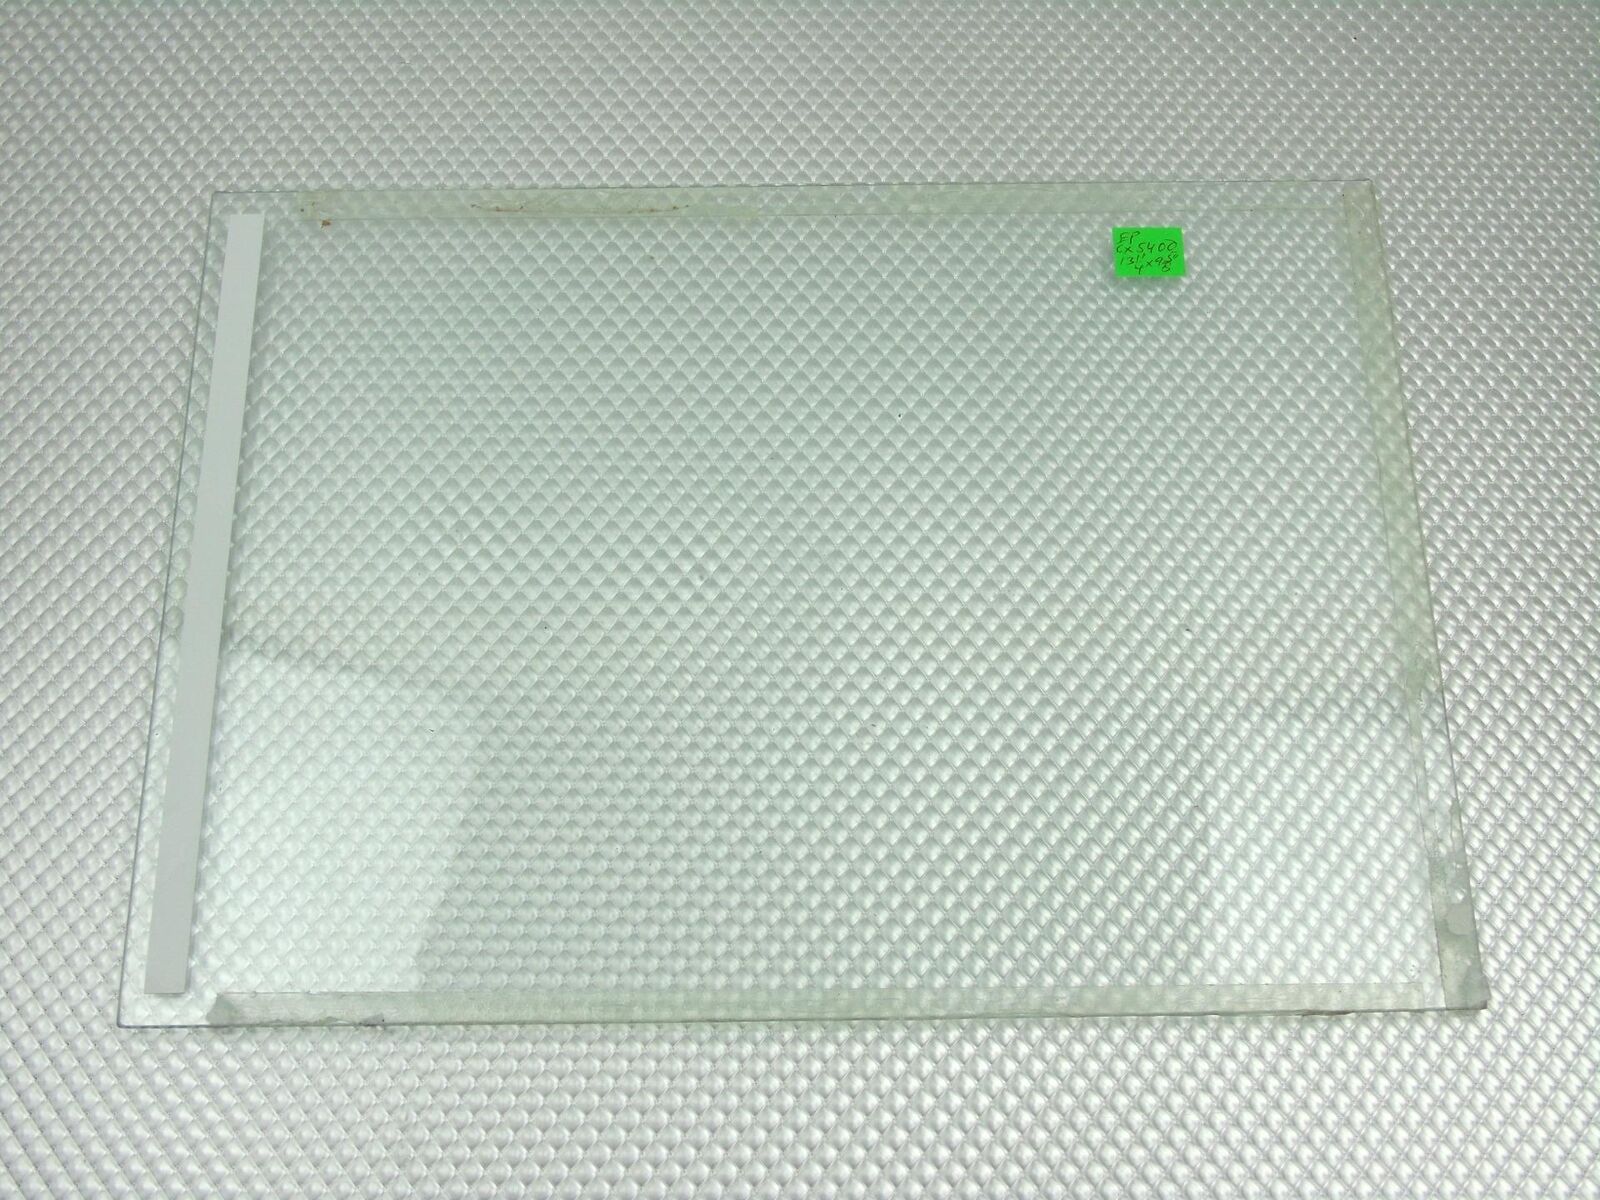 Epson Stylus CX5400 Printer Document Scanner Glass Sheet  (Not Full Printer)